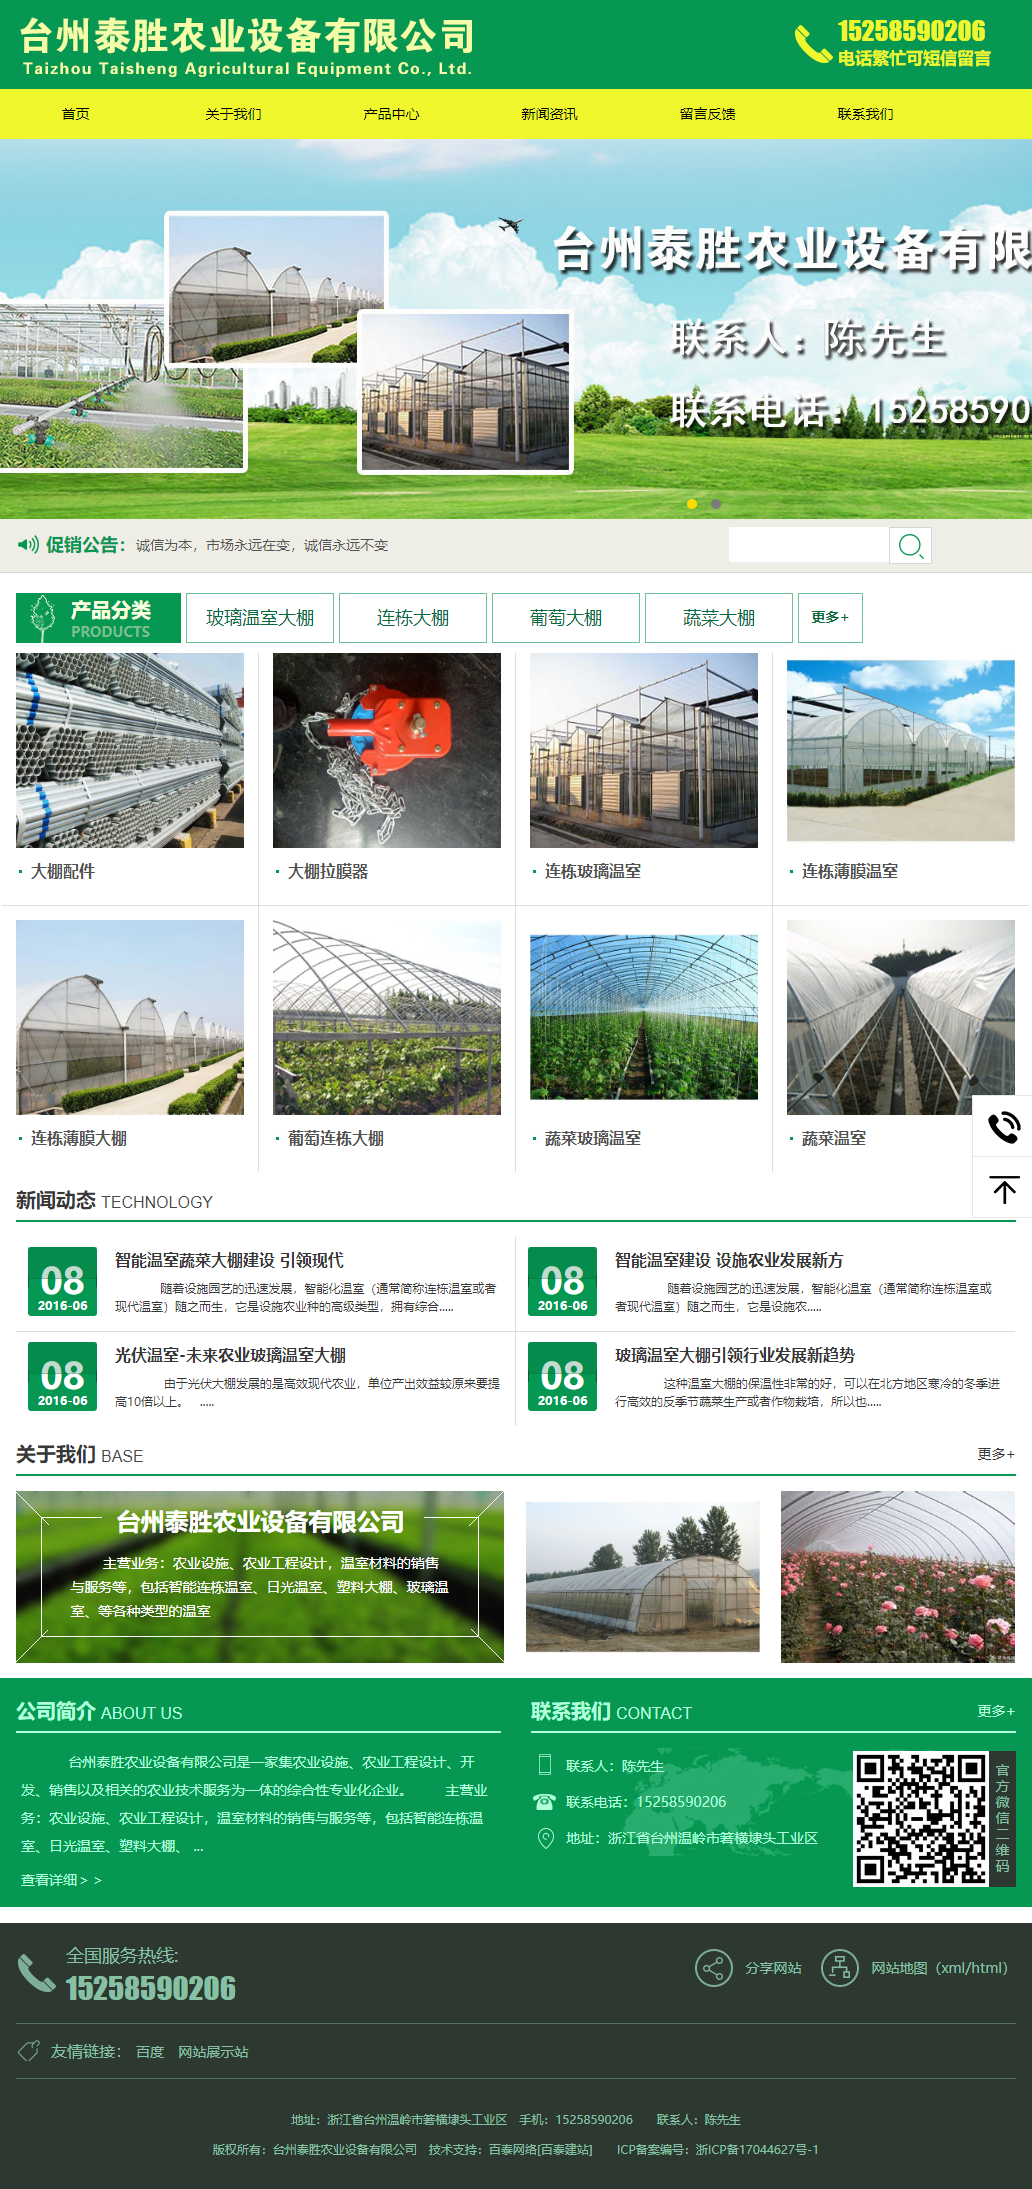 台州泰胜农业设备有限公司网站案例